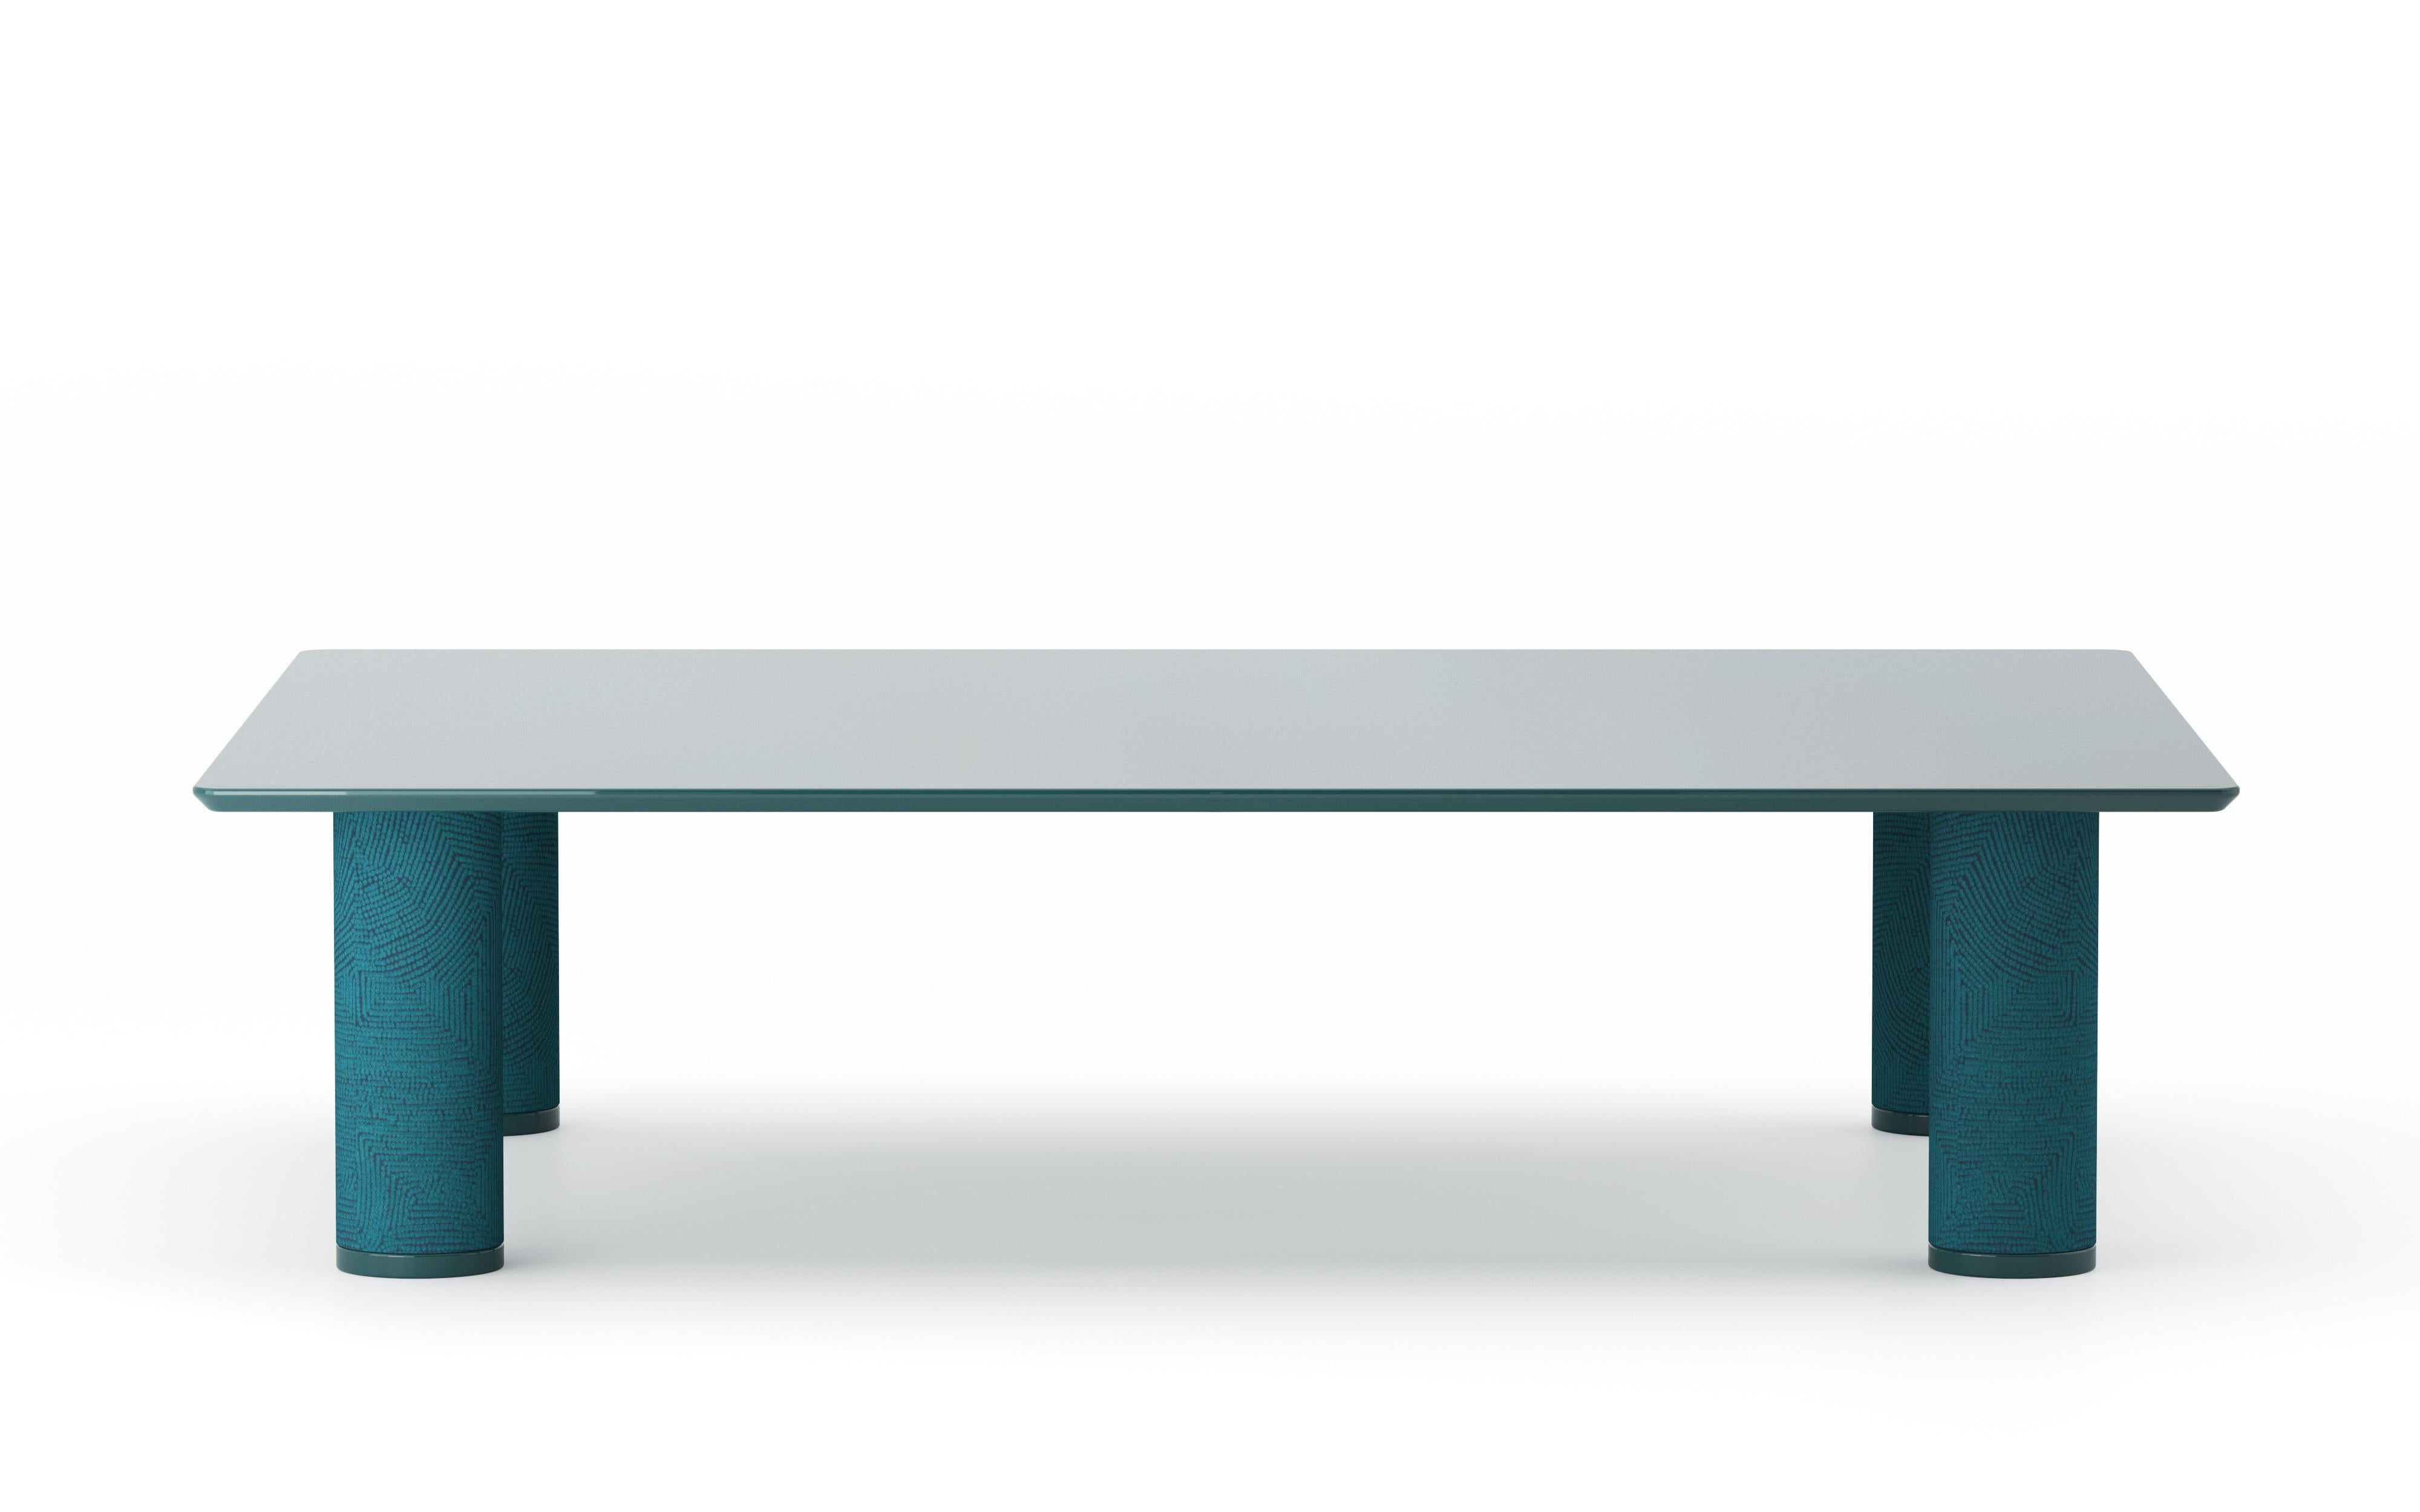 Table basse rectangulaire Uma de Purho.
Dimensions : D90 x L120 x H30 cm : D90 x W120 x H30 cm.
MATERIAL : Résine, pieds rembourrés en tissu.
Disponible dans d'autres couleurs.

UMA Rectangular est une table de la collection du même nom conçue par